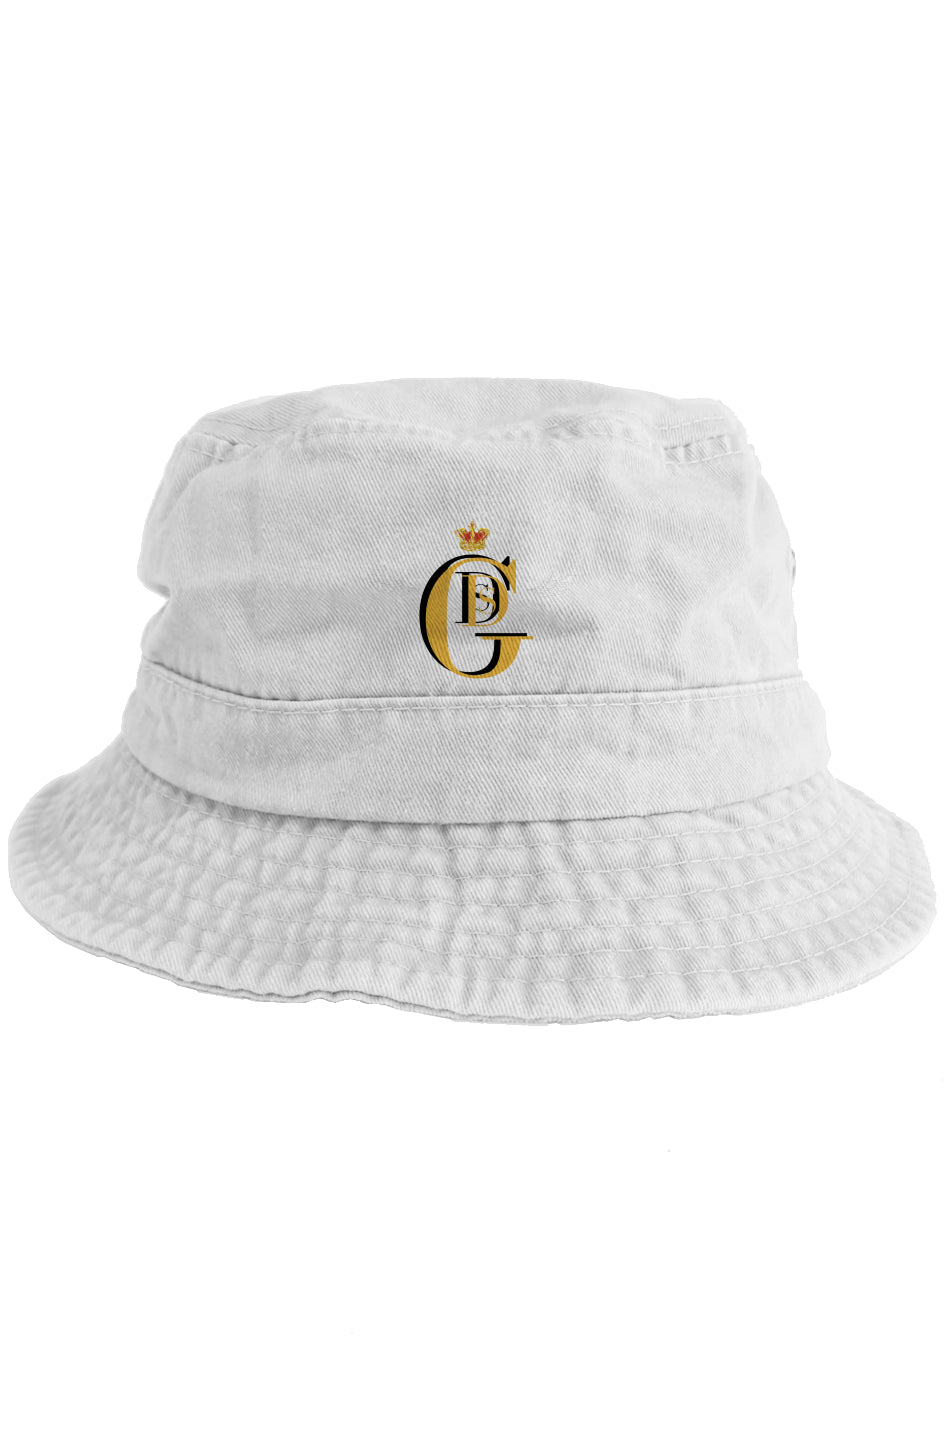 Capo Di Tutti Capi - Boss of All Bosses Bucket Hat